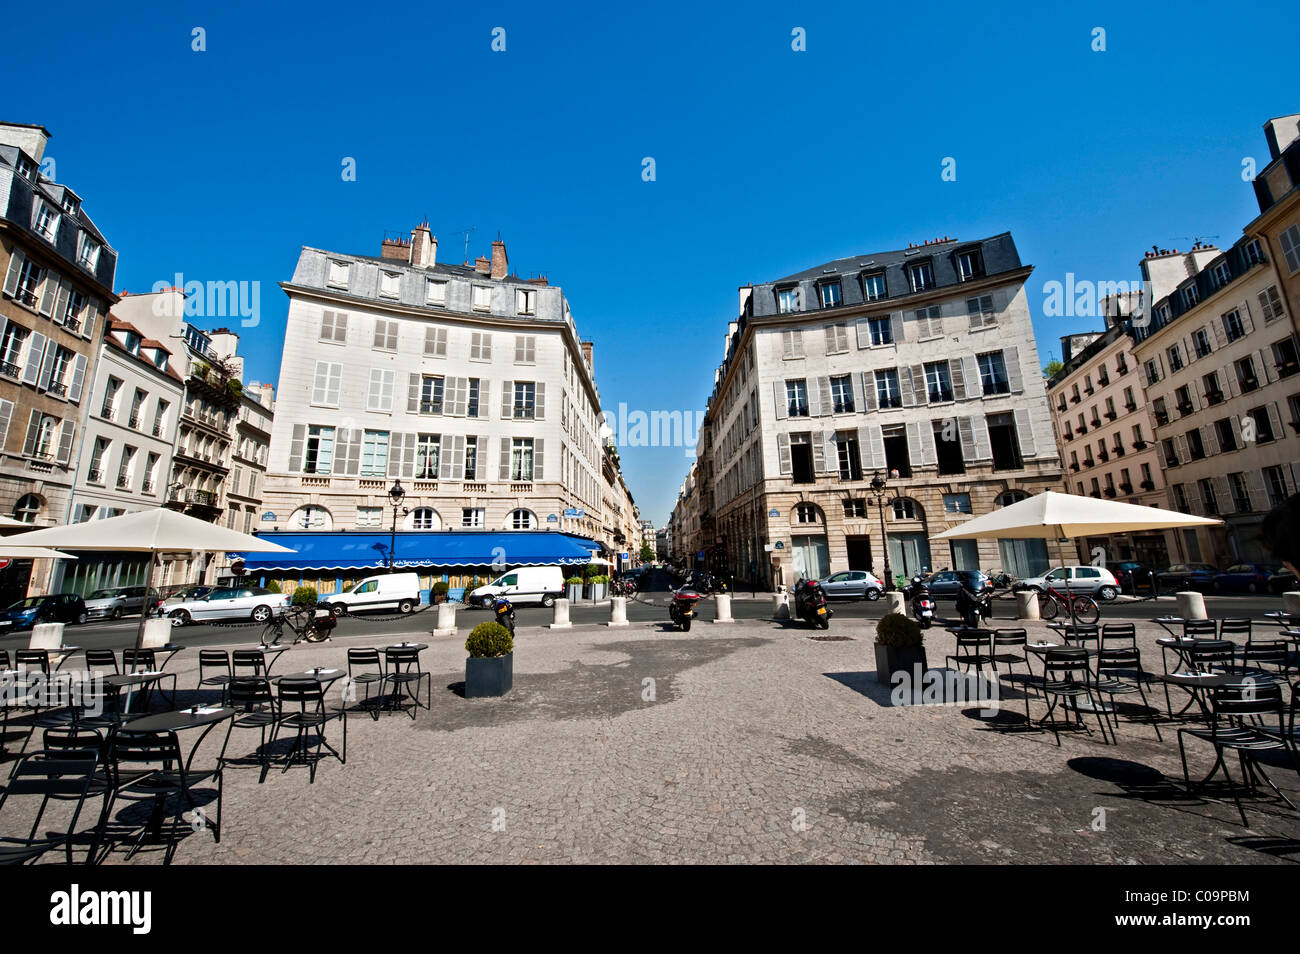 Place de l'Odéon square, Paris, Ile de France region, France, Europe Stock Photo